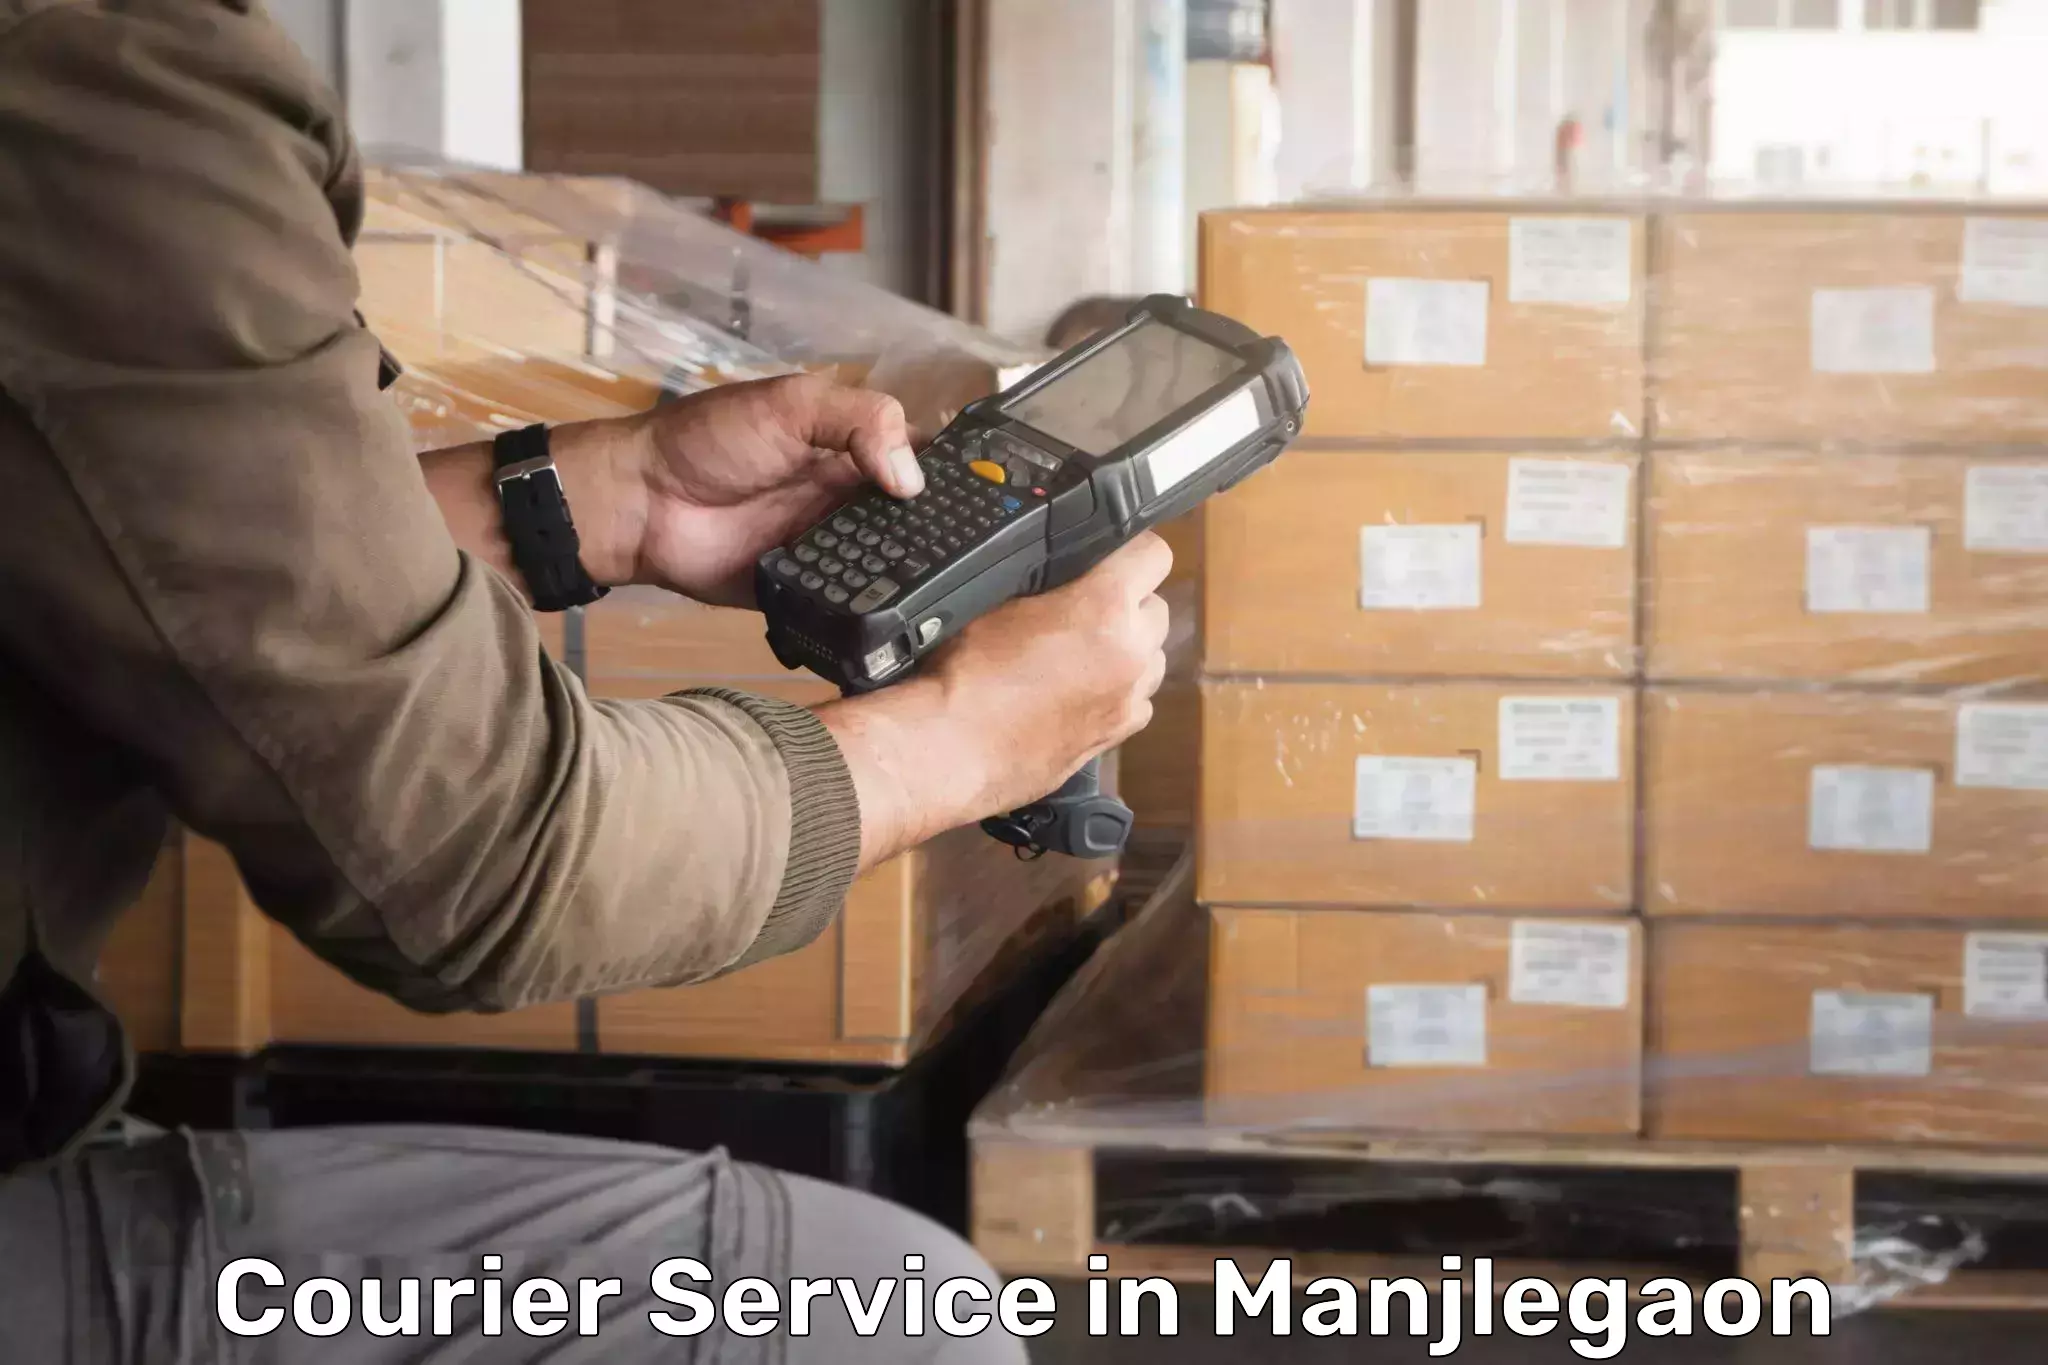 Customer-centric shipping in Manjlegaon